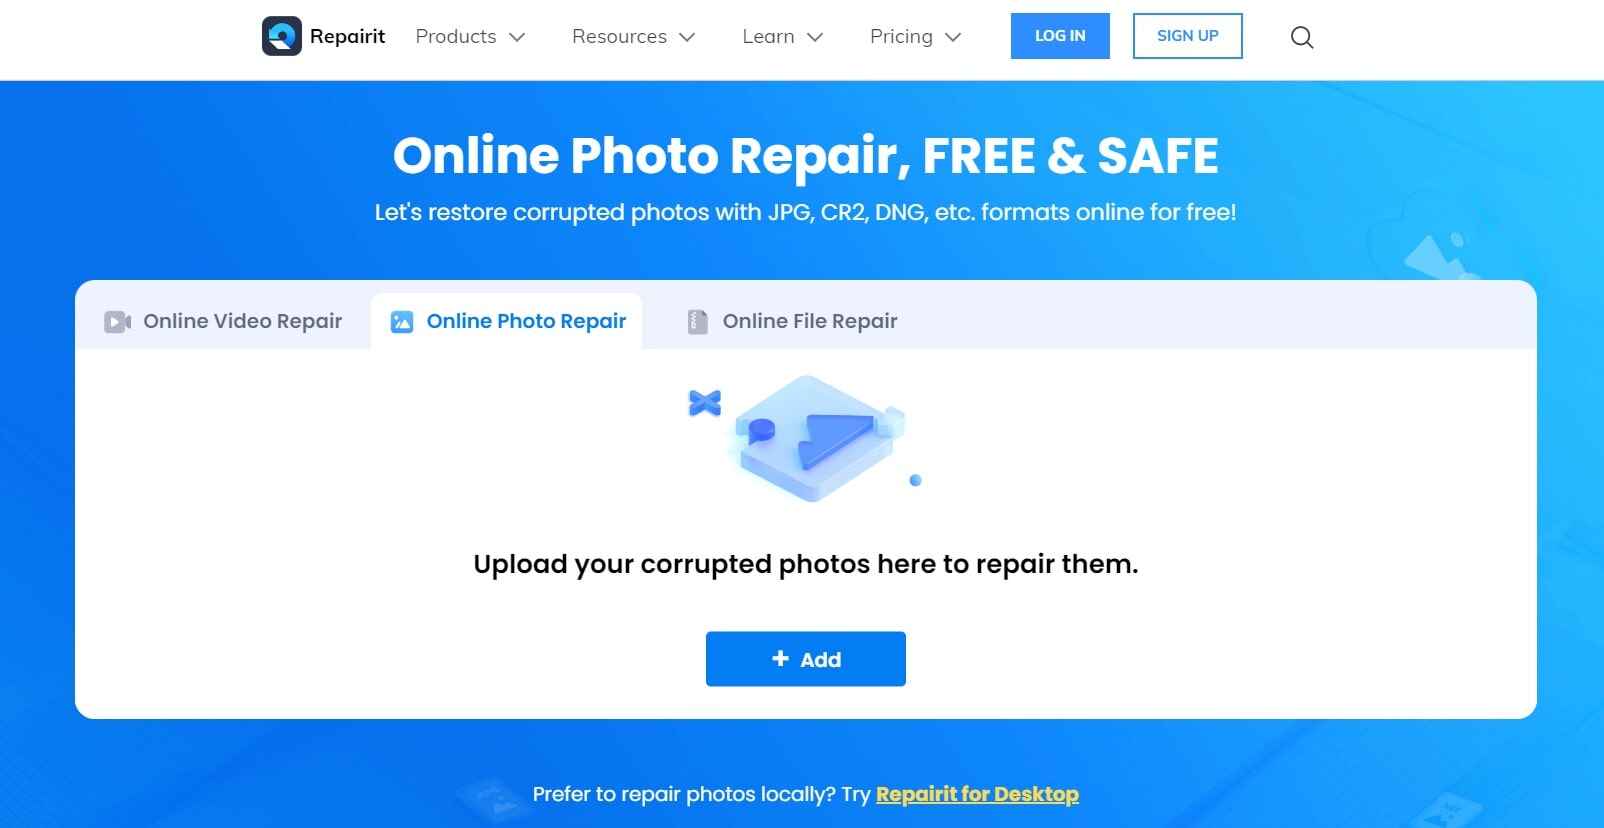 wondershare online photo repair tool